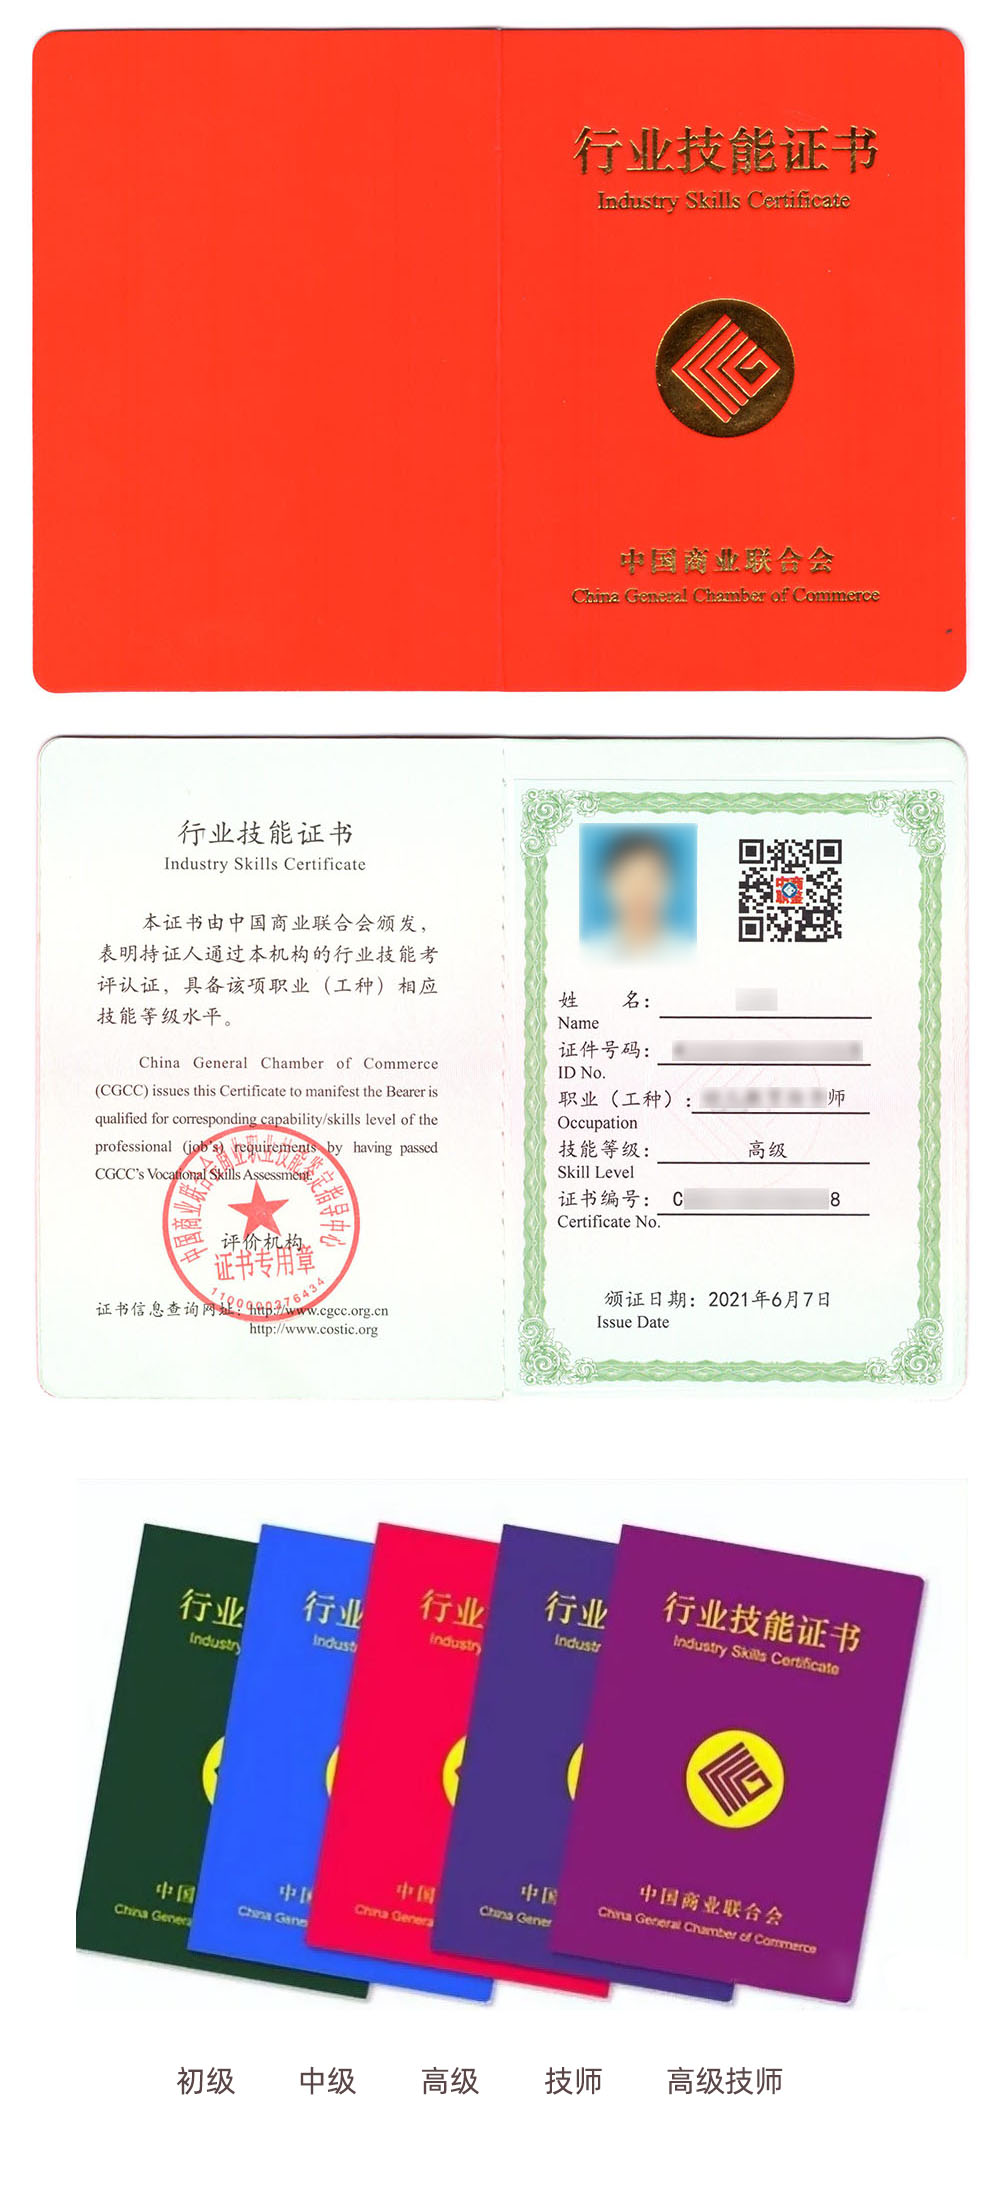 中国商业联合会商业职业技能鉴定中心 行业技能证书 餐饮管理证证书样本